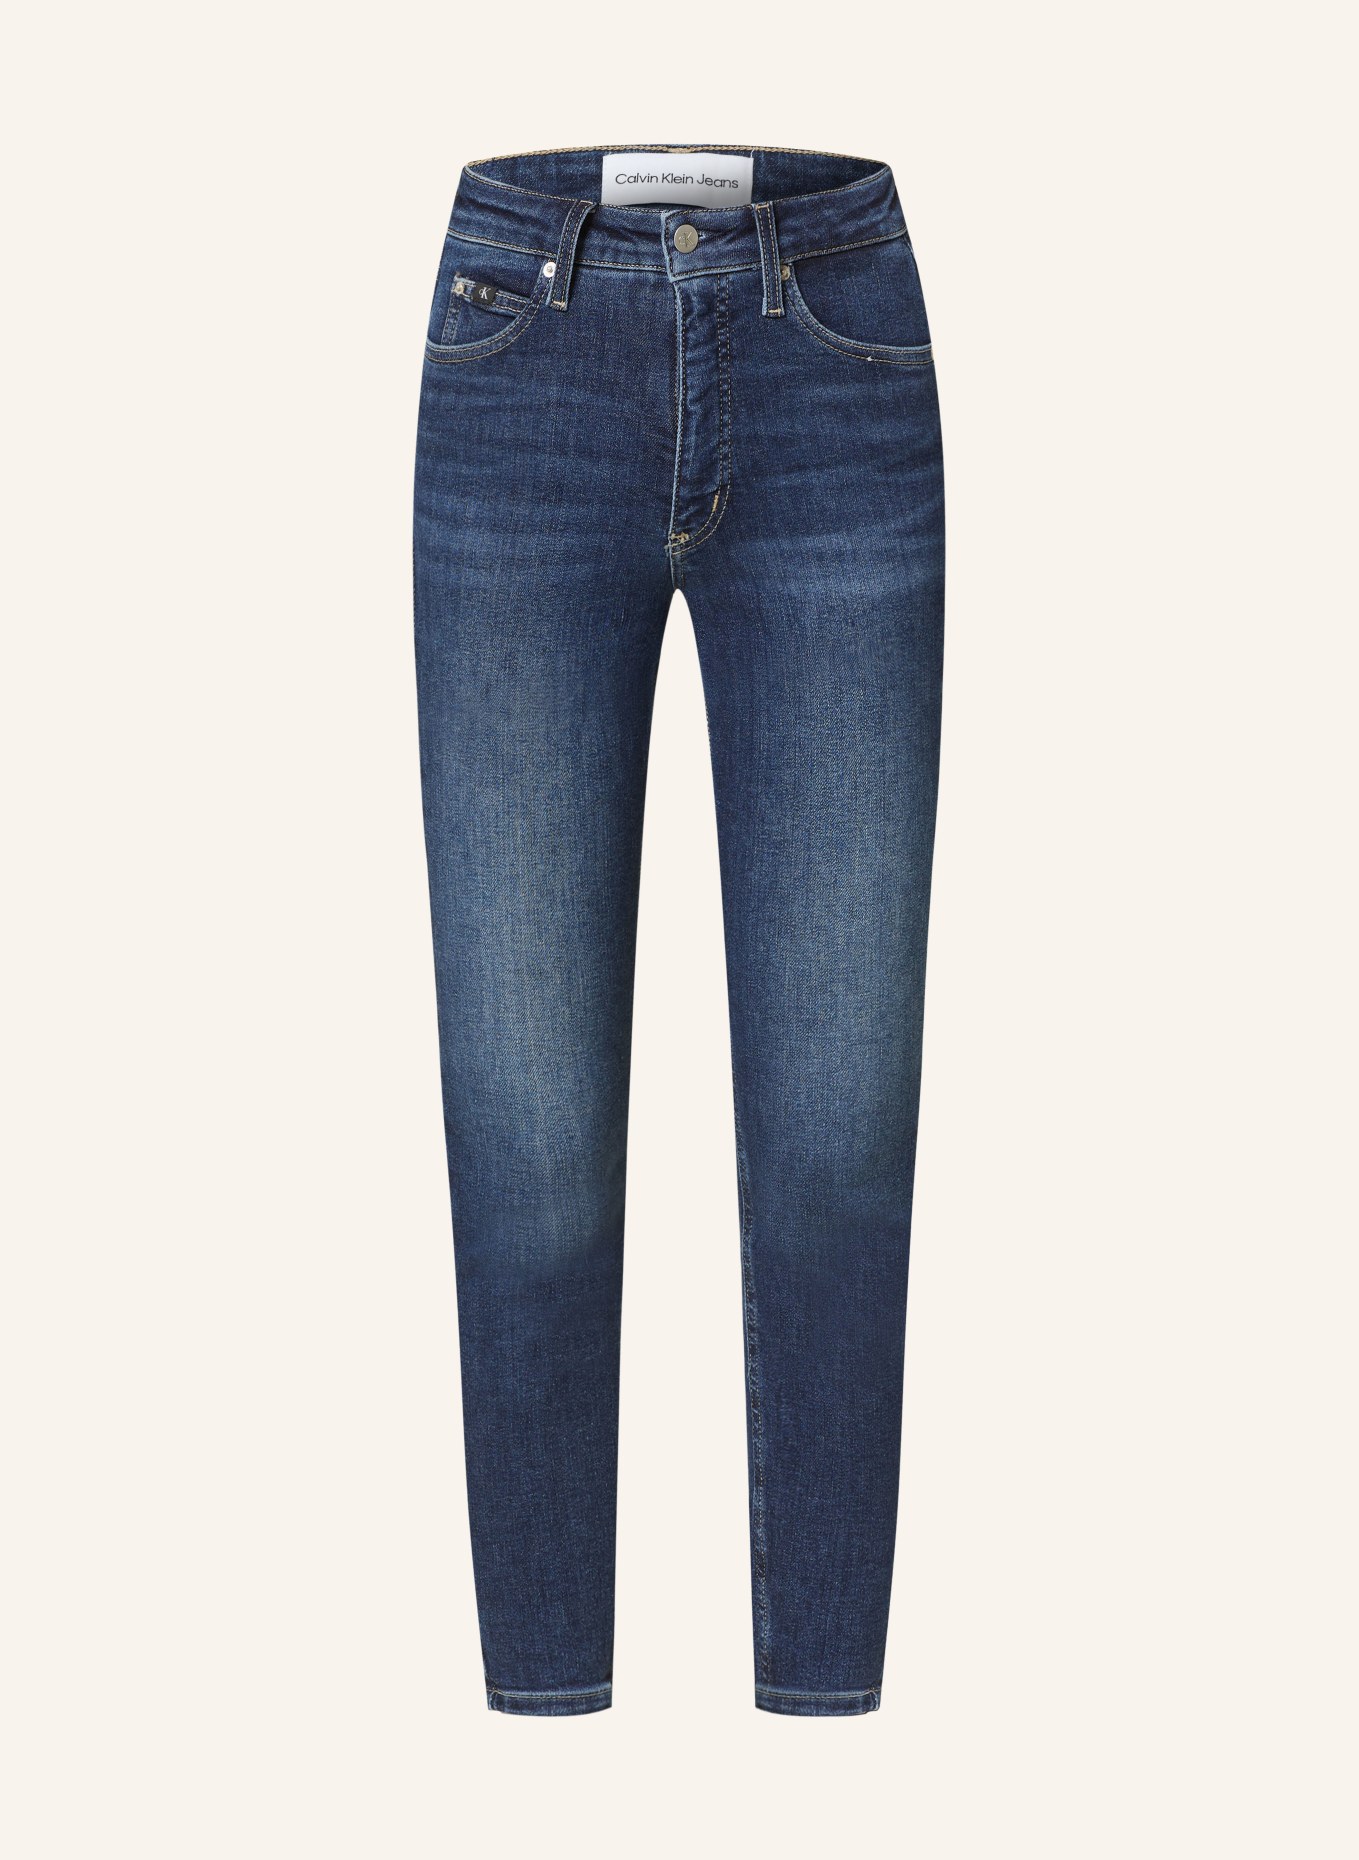 Calvin Klein Jeans Skinny Jeans, Farbe: 1BJ DENIM DARK (Bild 1)